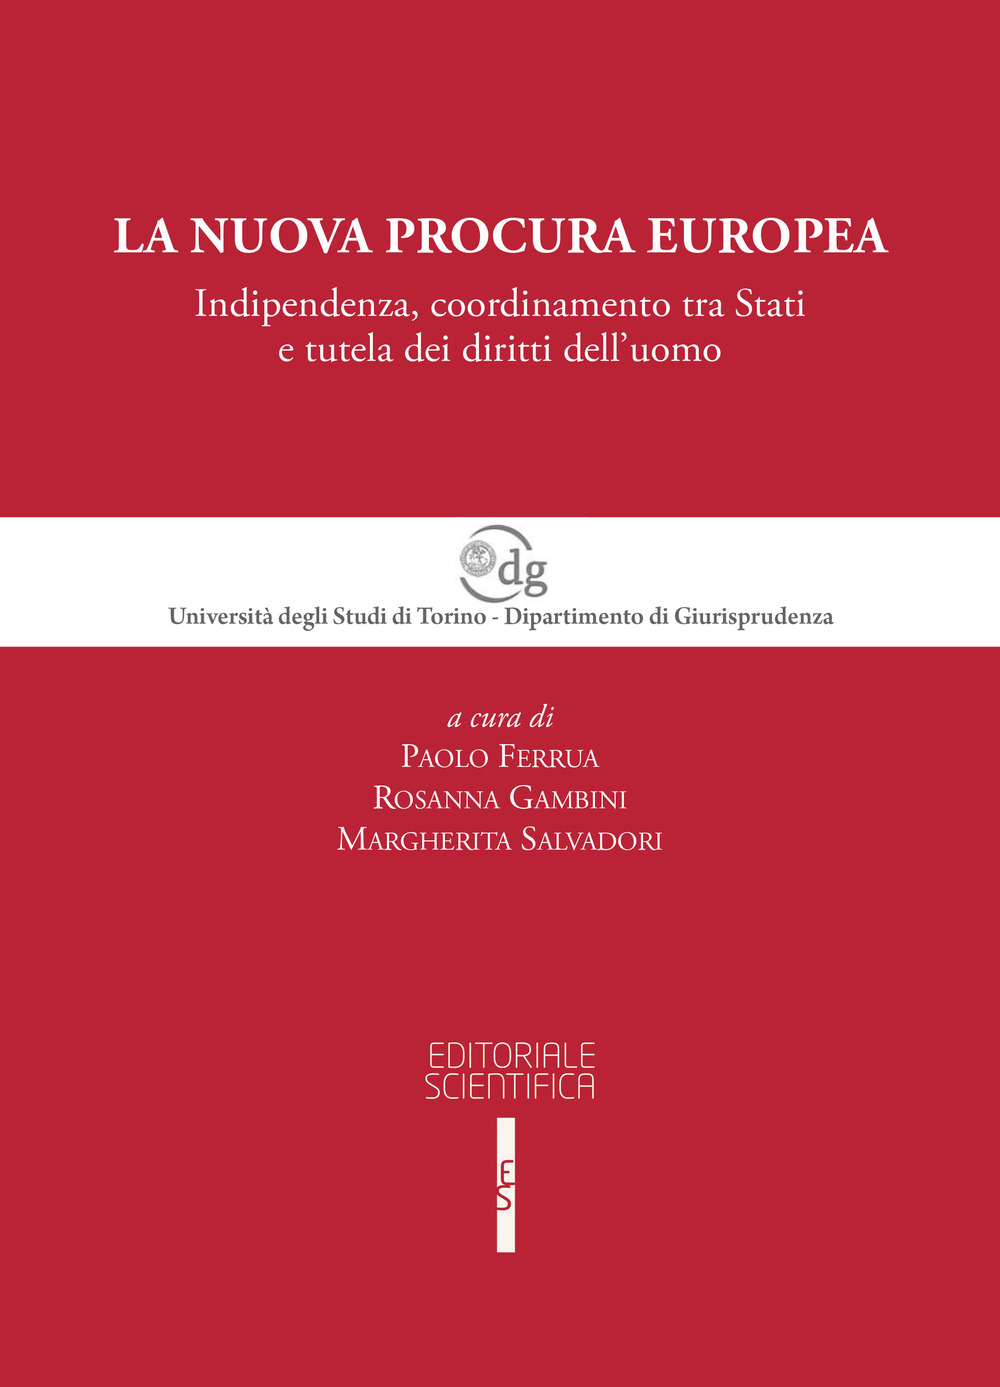 La nuova procura europea. Indipendenza, coordinamento tra Stati e tutela dei diritti dell'uomo